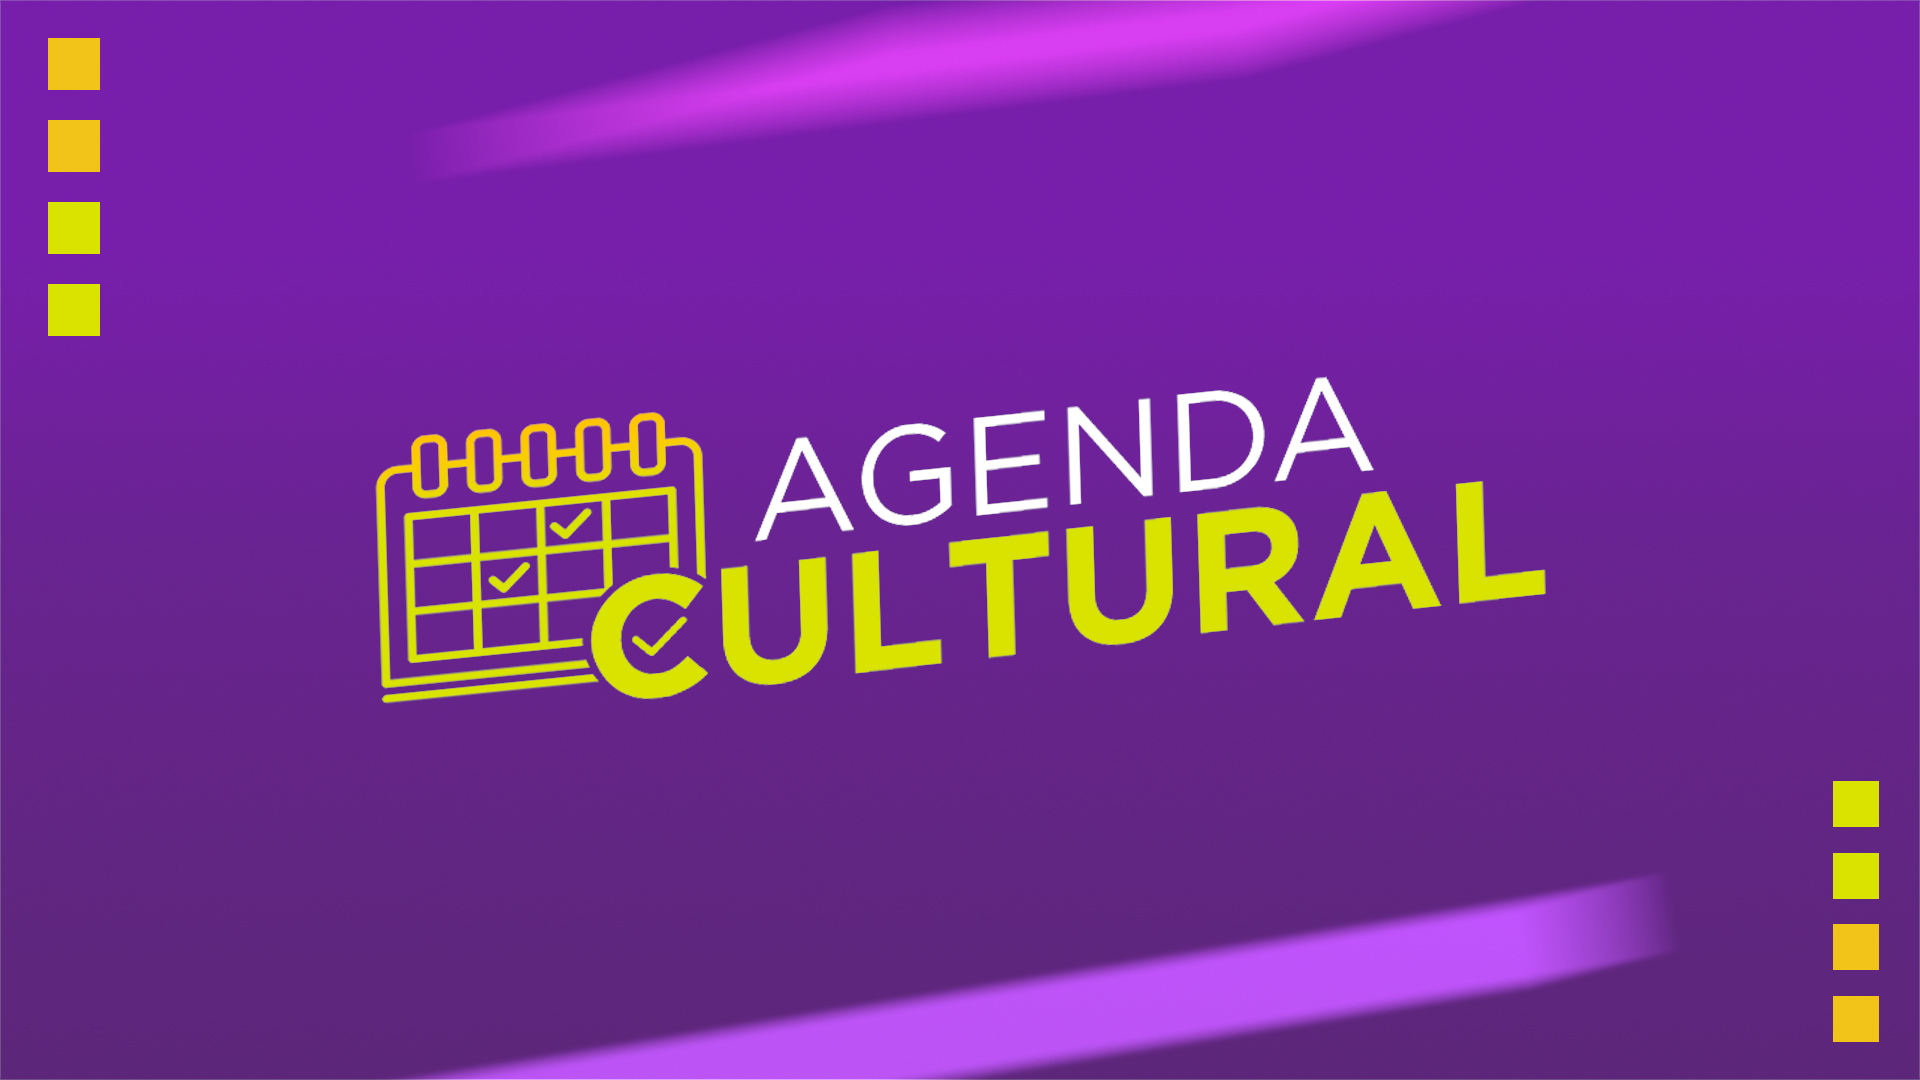 Agenda Cultural os eventos que acontecem em Salvador nesta véspera de